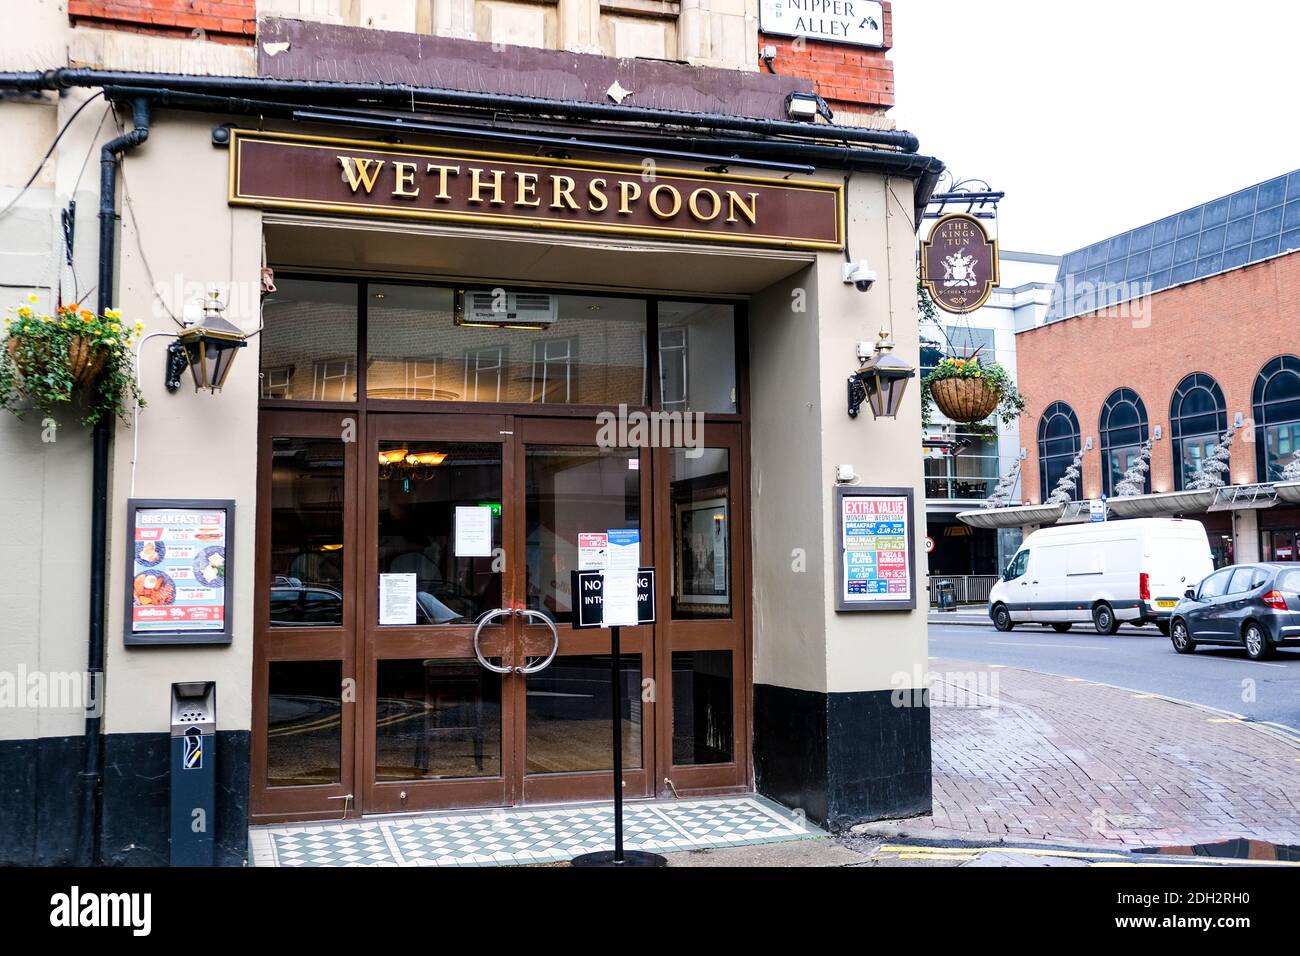 Kingston London, Dezember 09 2020, J D Wetherspoond Pub mit einer Krise in der Hotellerie aufgrund der COVID-19 Lockdown konfrontiert Stockfoto